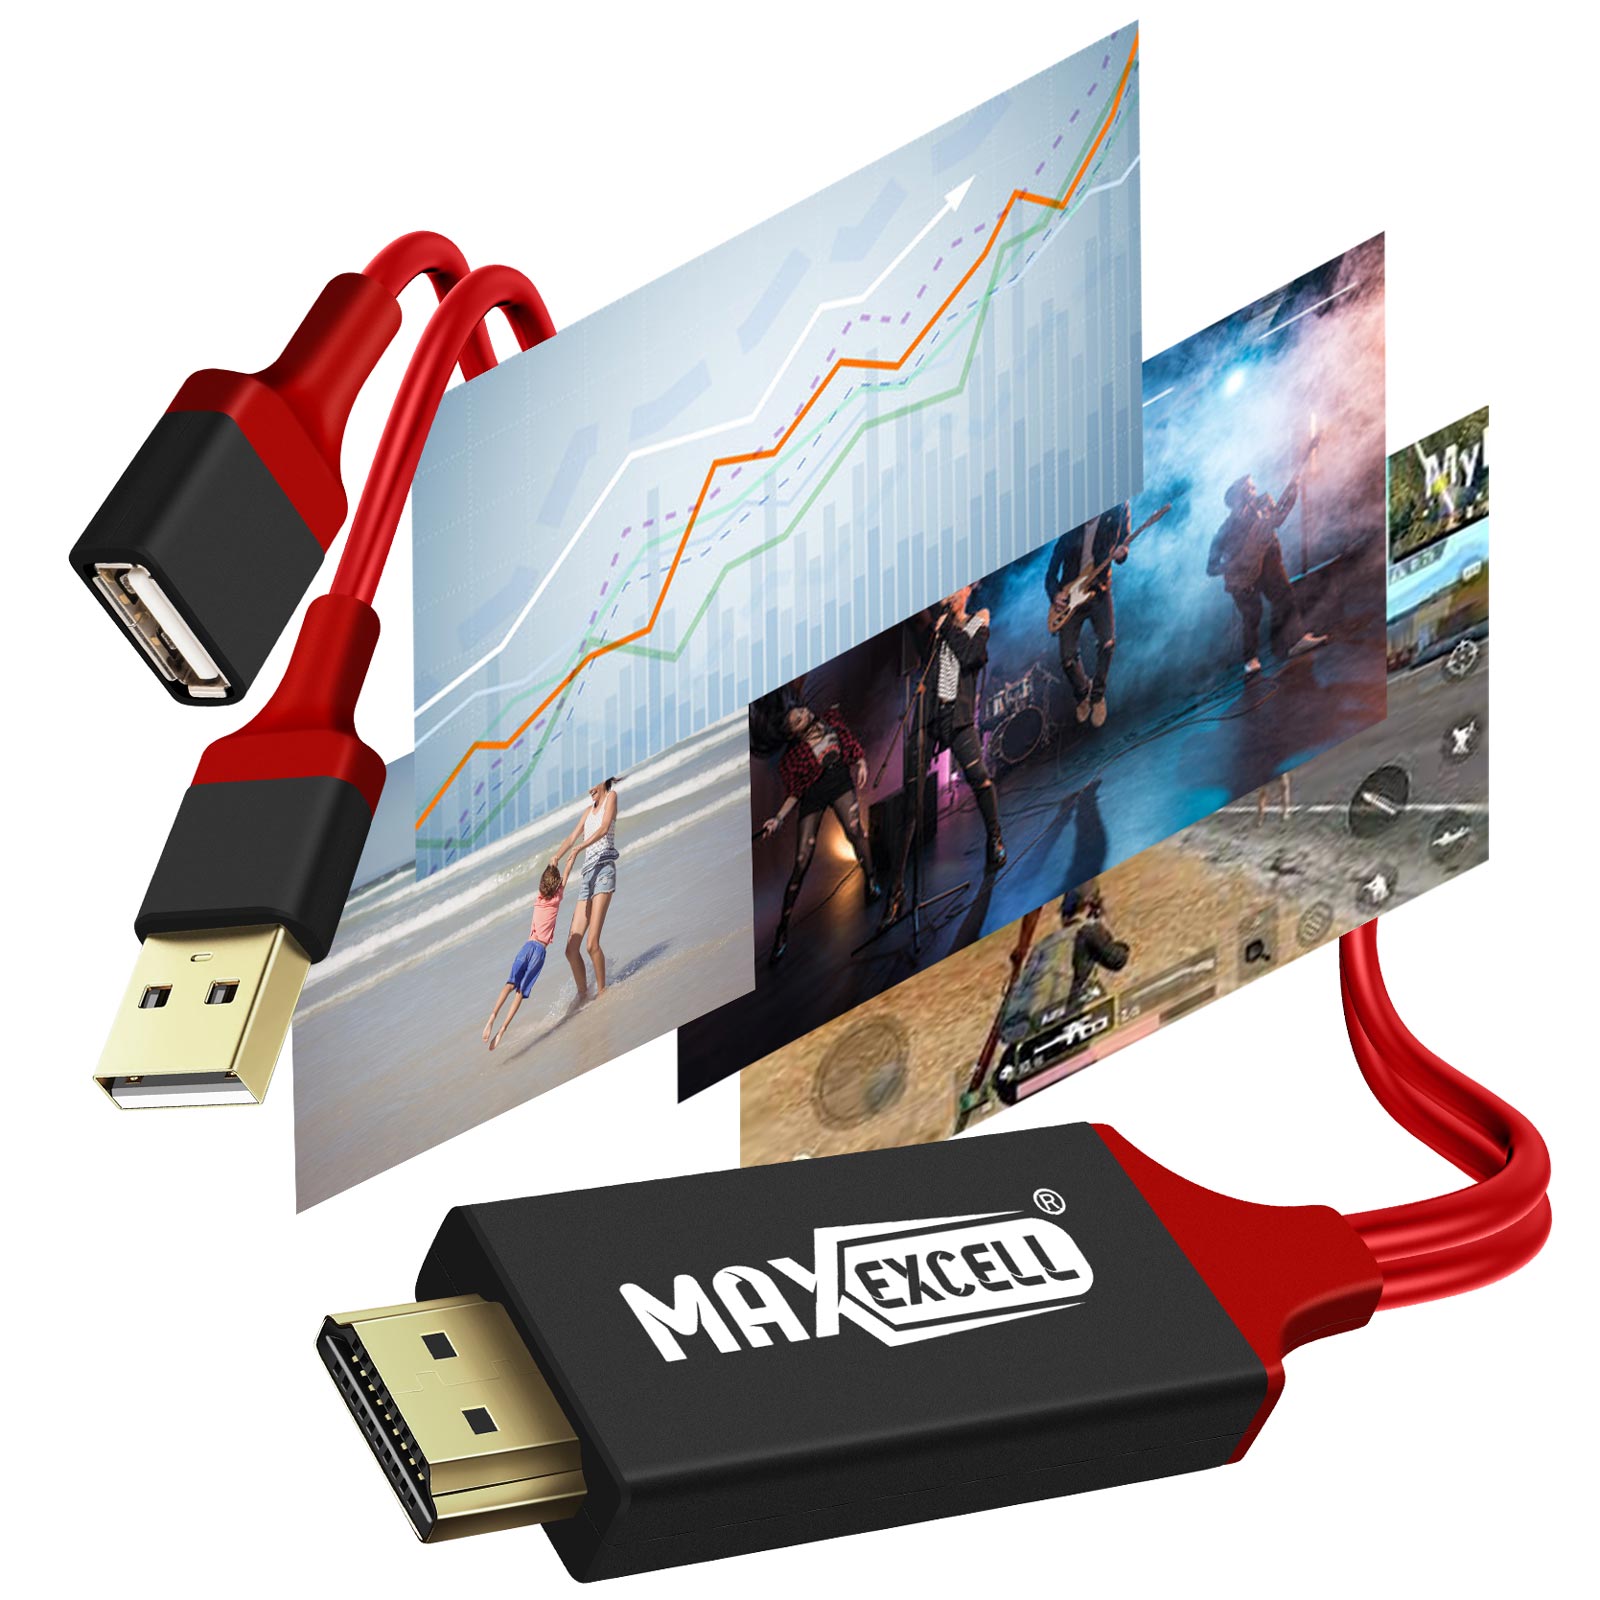 Câble HDMI Universel pour Smartphone et Tablette MHL, Résolution HD 2K, Max  excell - Noir / Rouge - Français